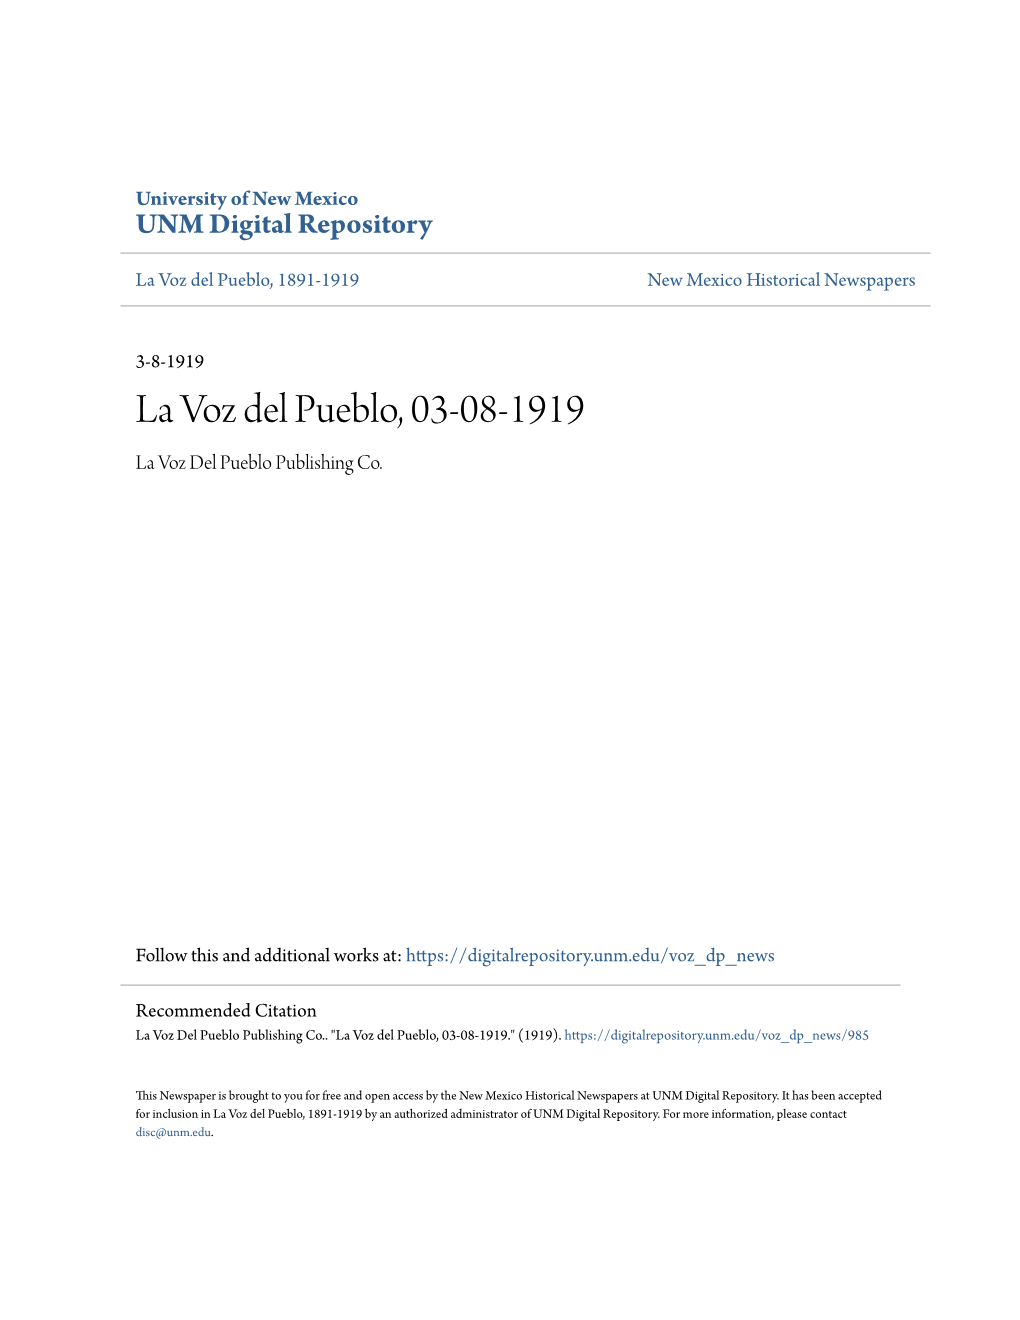 La Voz Del Pueblo, 03-08-1919 La Voz Del Pueblo Publishing Co